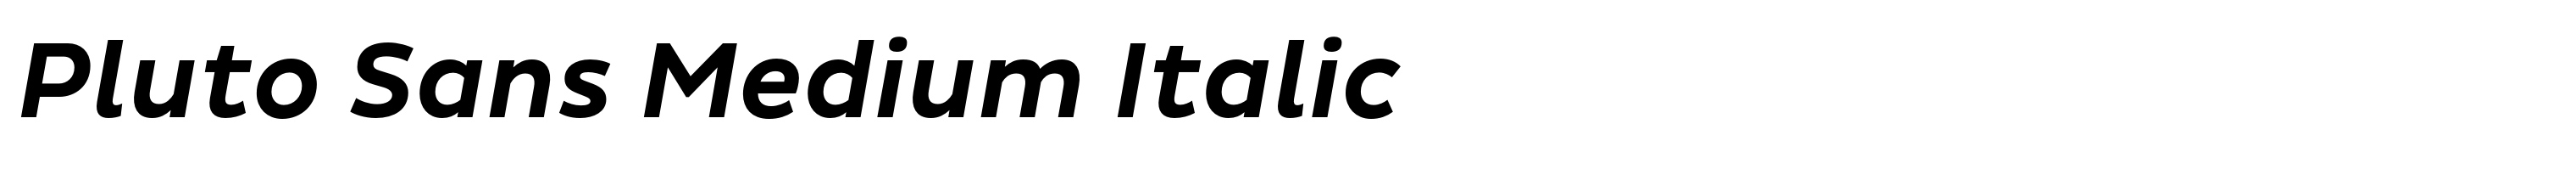 Pluto Sans Medium Italic